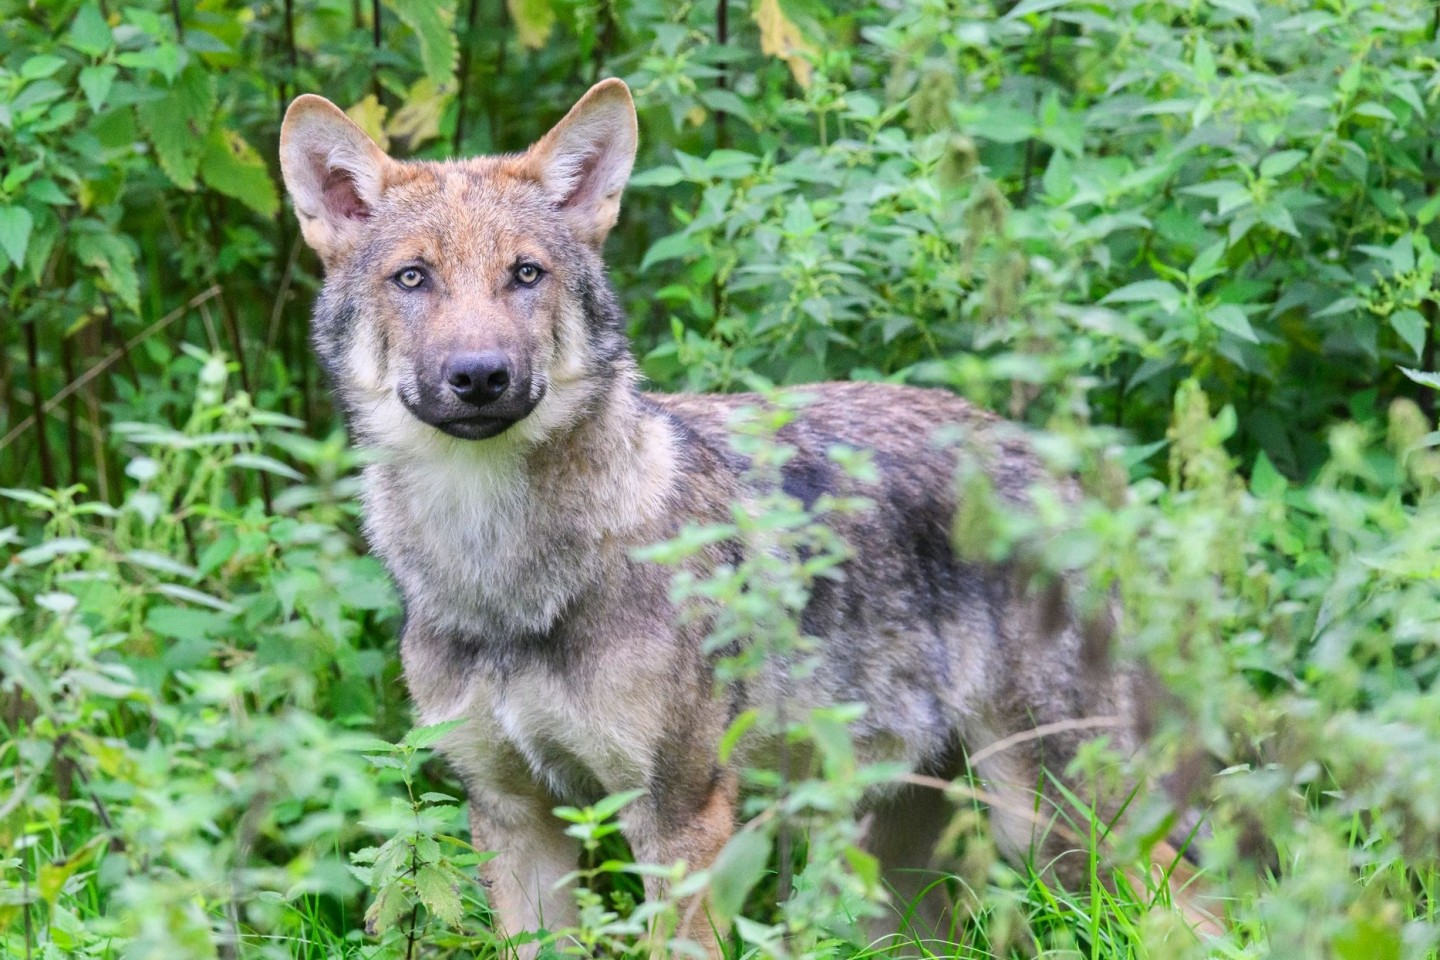 Wölfe stehen unter strengem Naturschutz und dürfen nur mit einer behördlichen Ausnahmegenehmigung unter strengen Voraussetzungen geschossen werden.